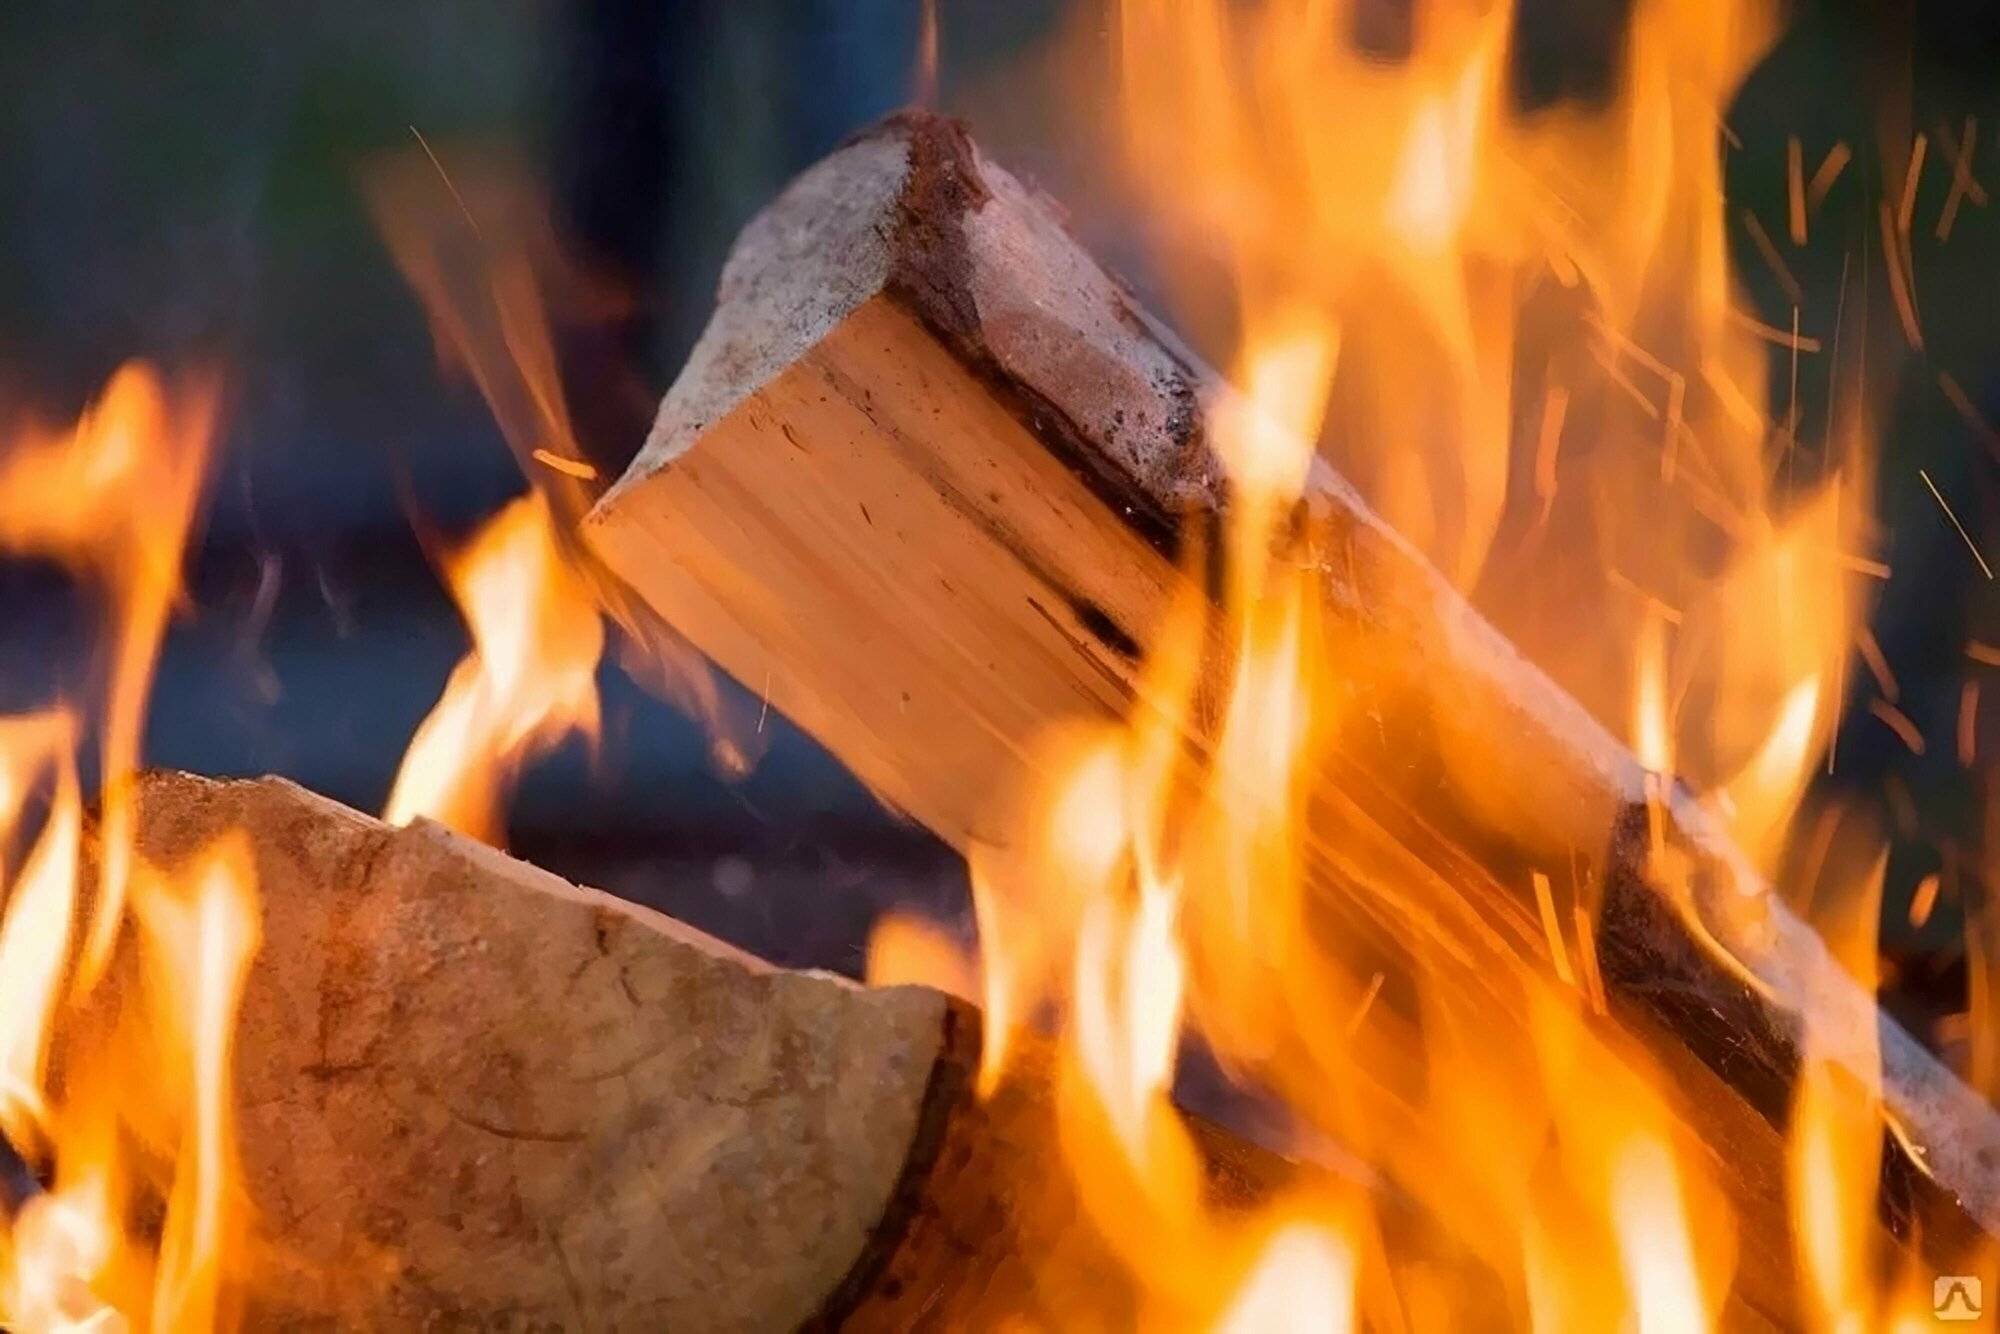 Жидкость для розжига 0,2л углеводородная - предназначена для розжига дров, древесного угля, топливных брикетов. Она позволит быстро и просто разжечь даже сырые дрова.